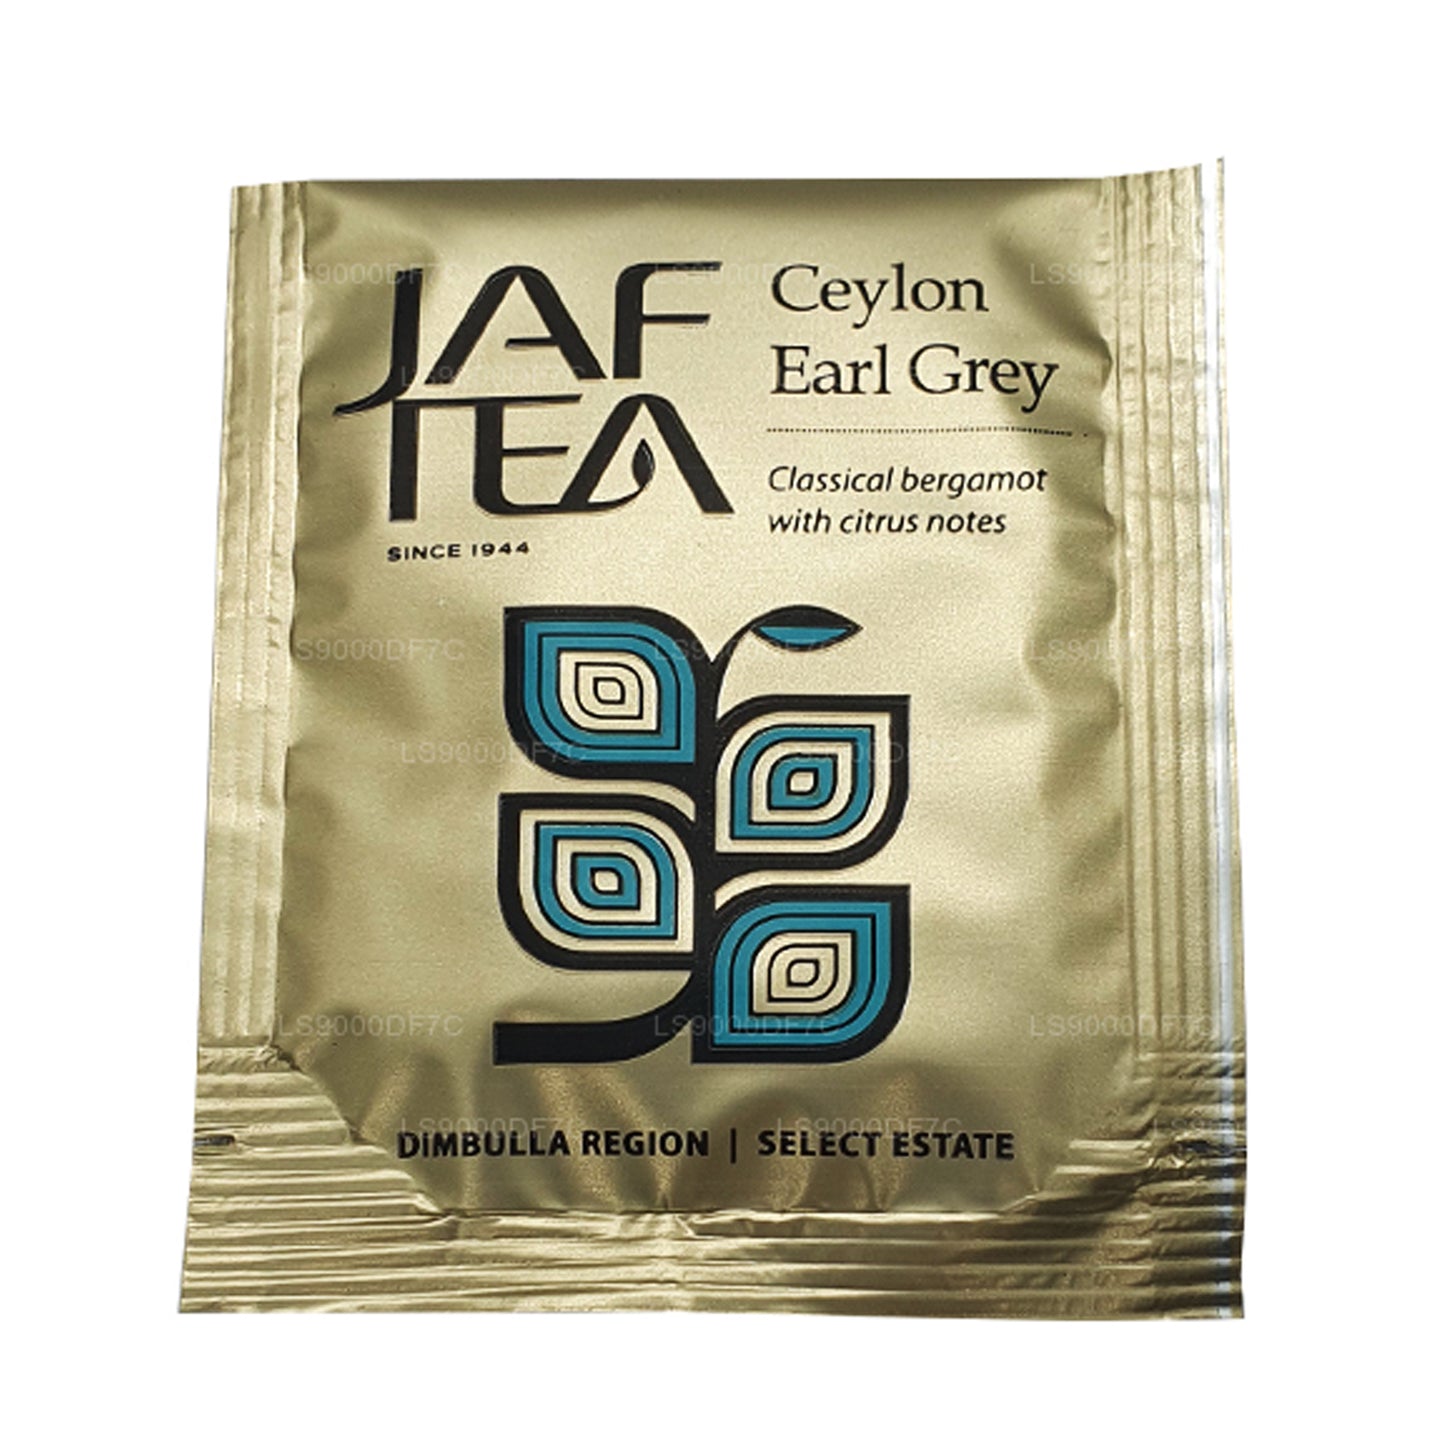 Jaf Tea Pure Teas 和输液 (145 克) 80 个茶包